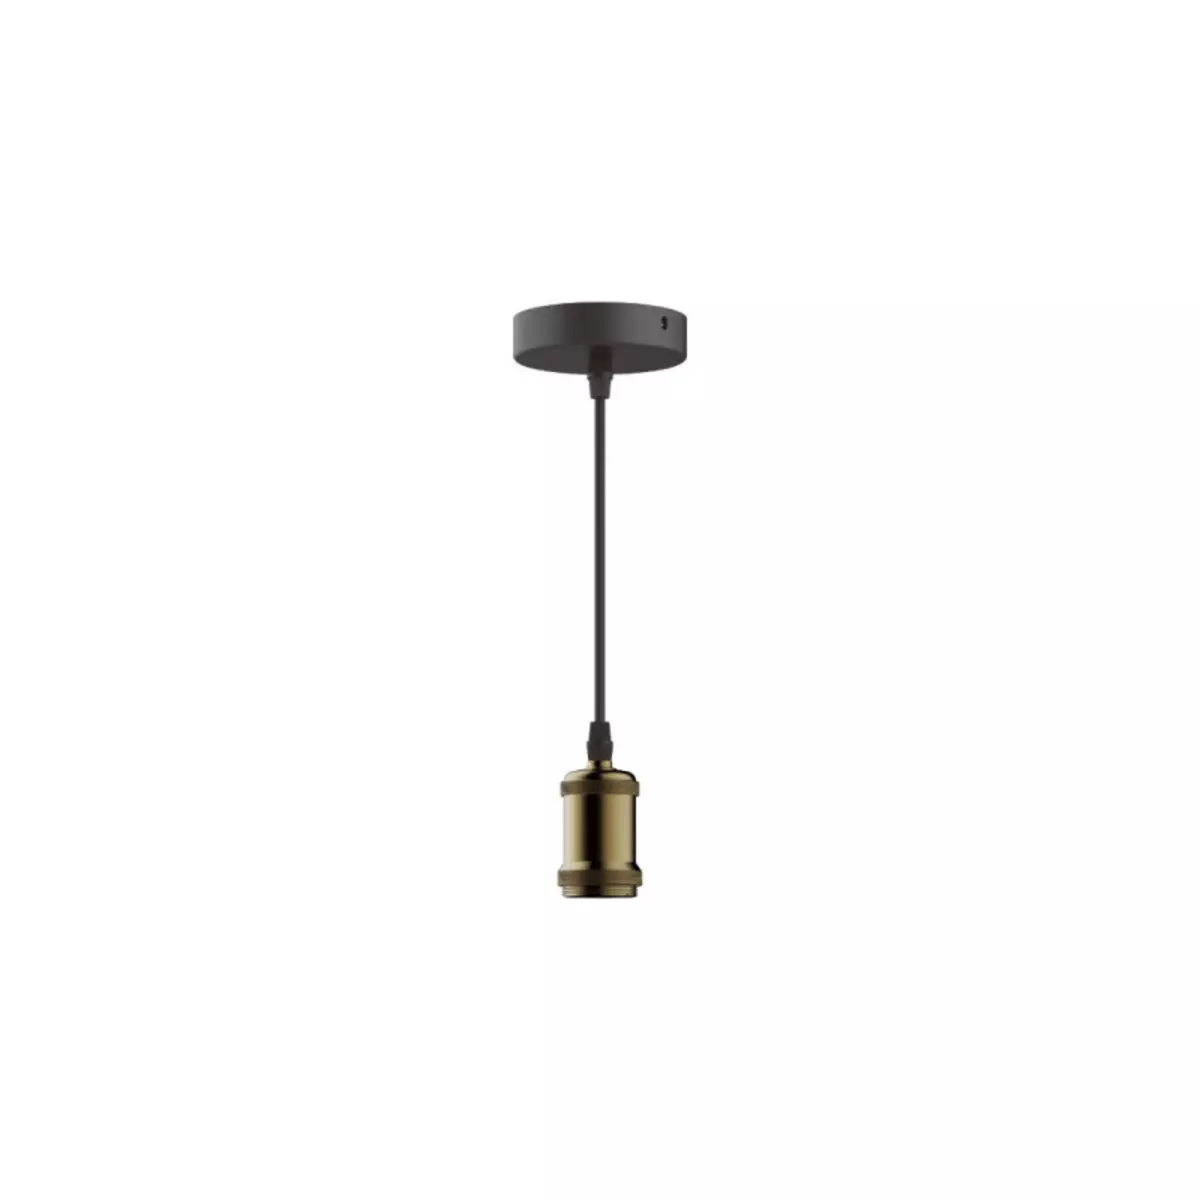  Suspension luminaire style antique XXCELL - bronze mat - E27 - 1m